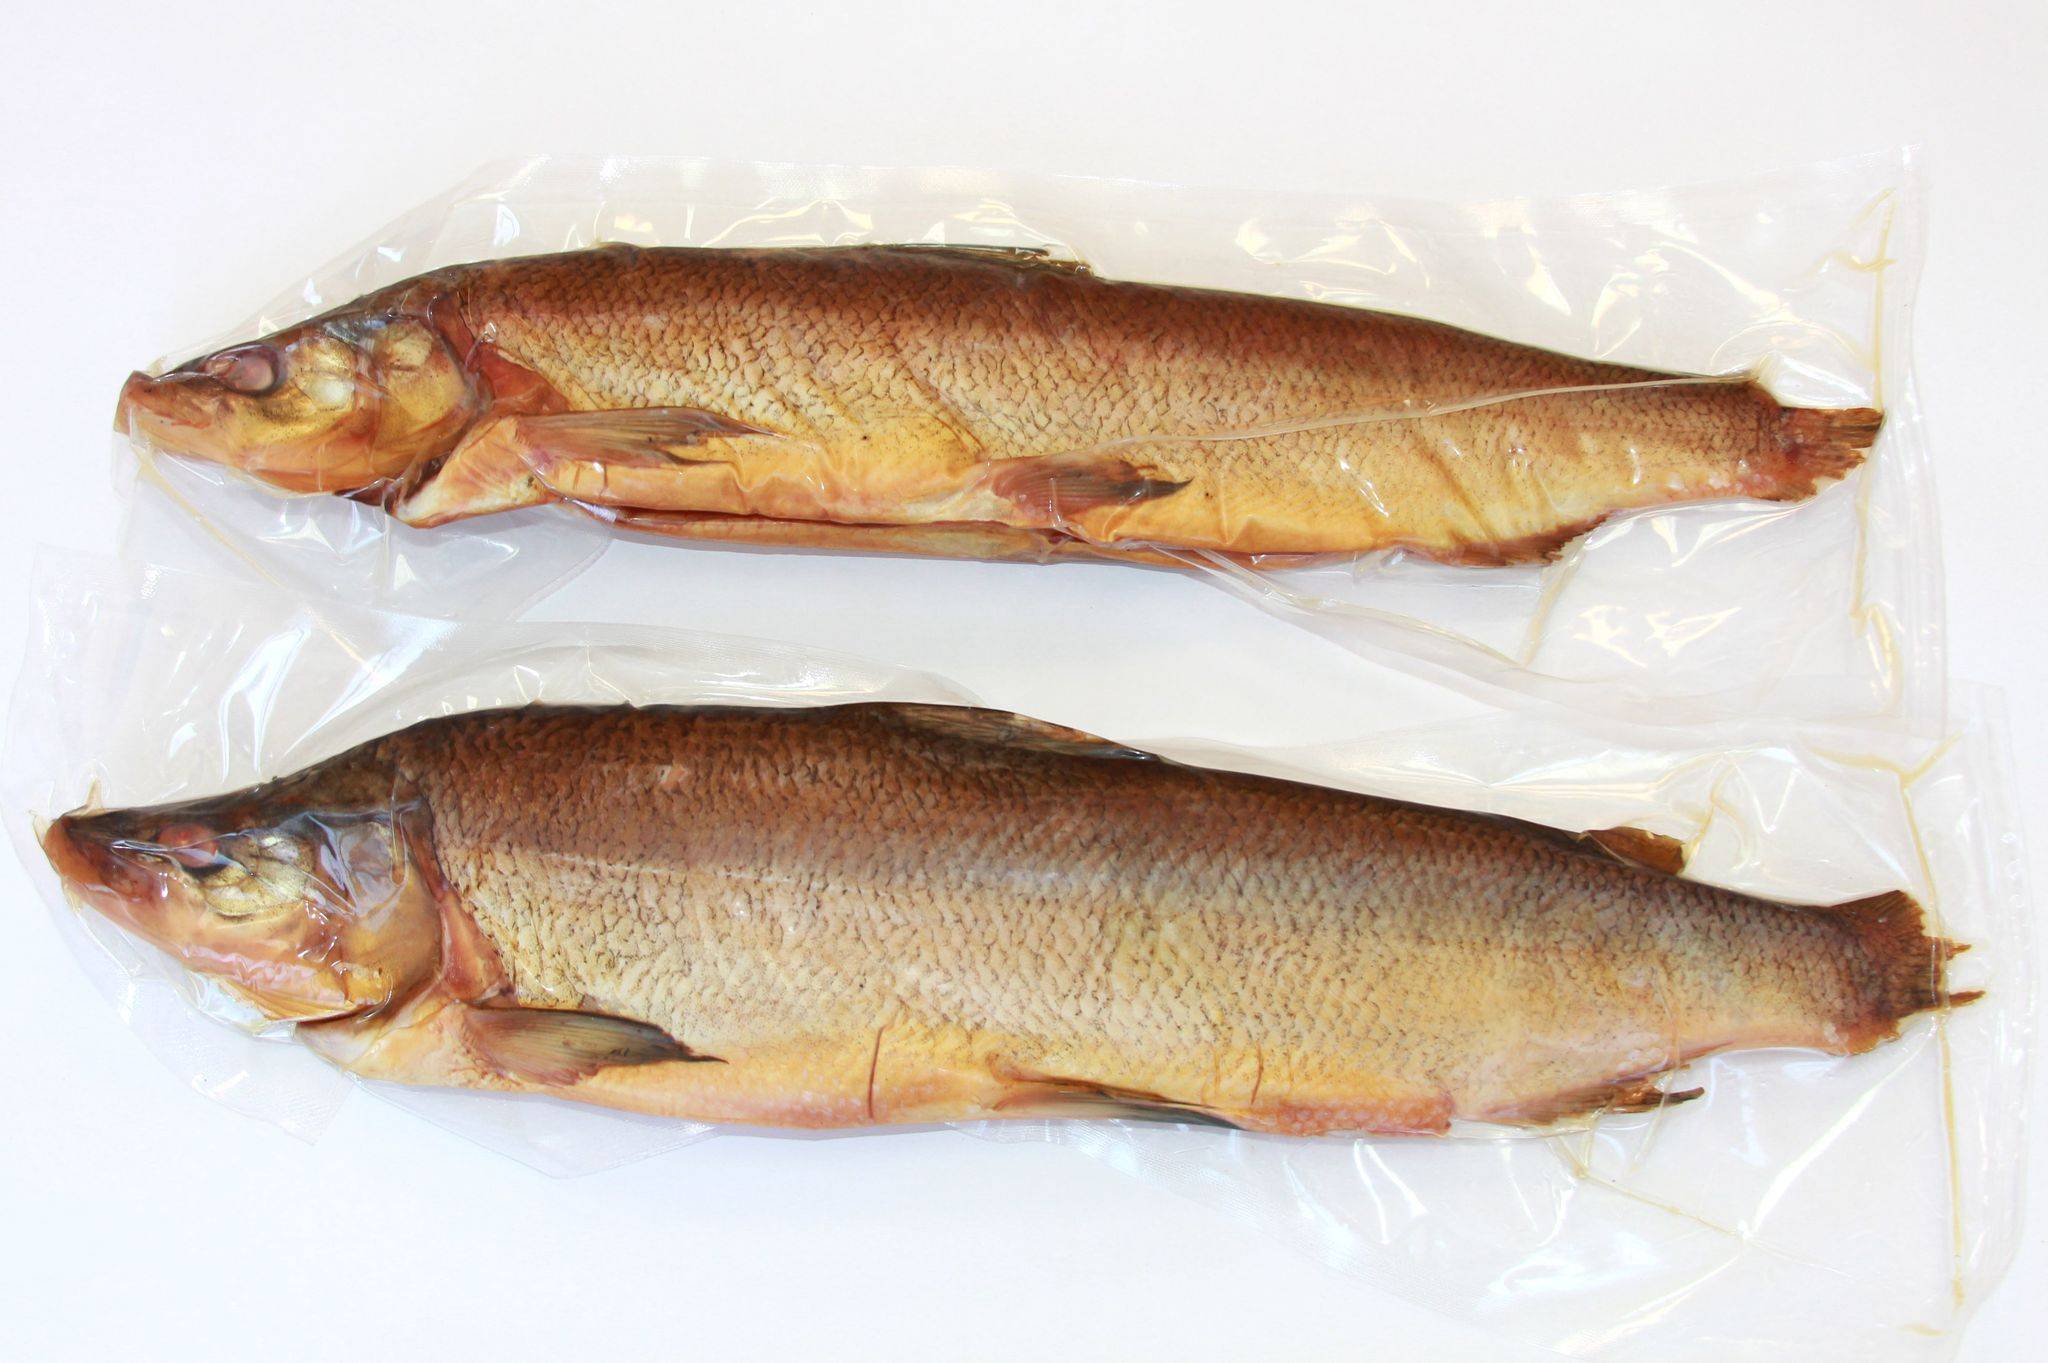 Муксун рыба – что это такое, отличия от щекура, ловля и полезные свойства